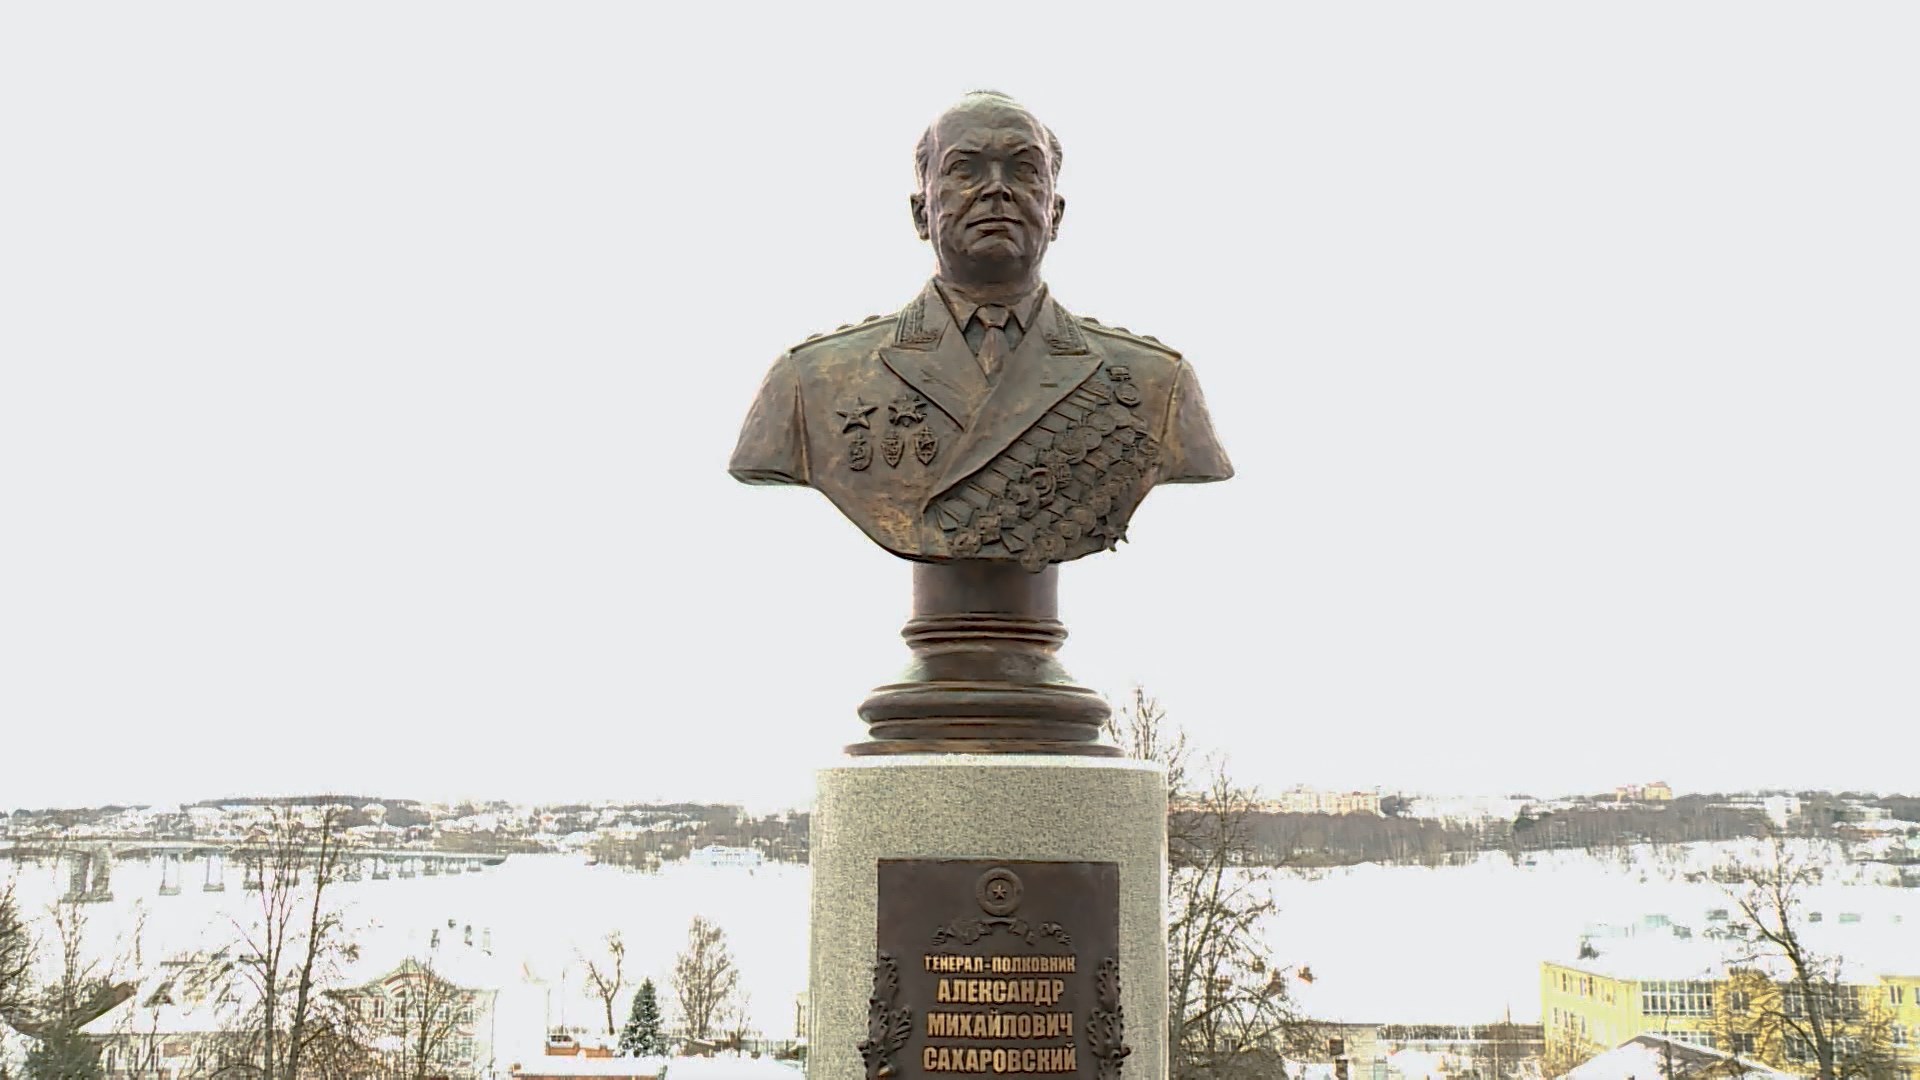 В Костроме установили бюст генералу-полковнику Советского Союза Александру Сахаровскому